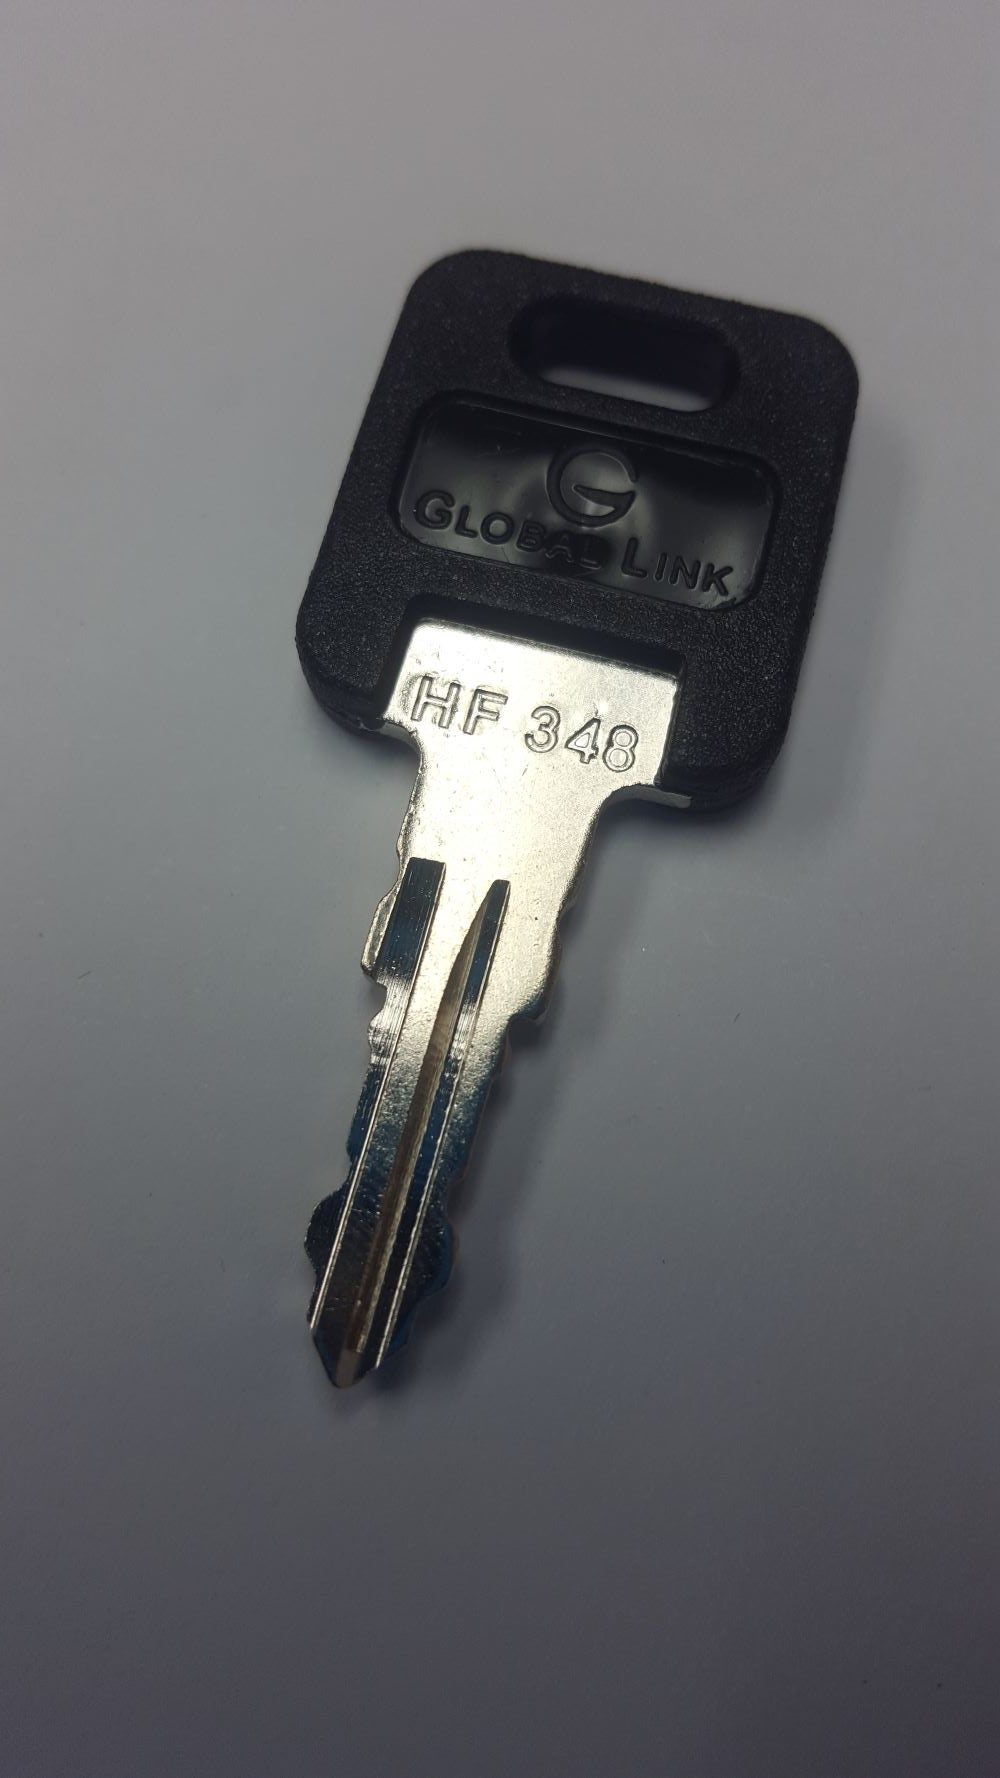 CPG KEY-HF-348 Pre-cut Stamped FIC Replacemnt HF348 Key